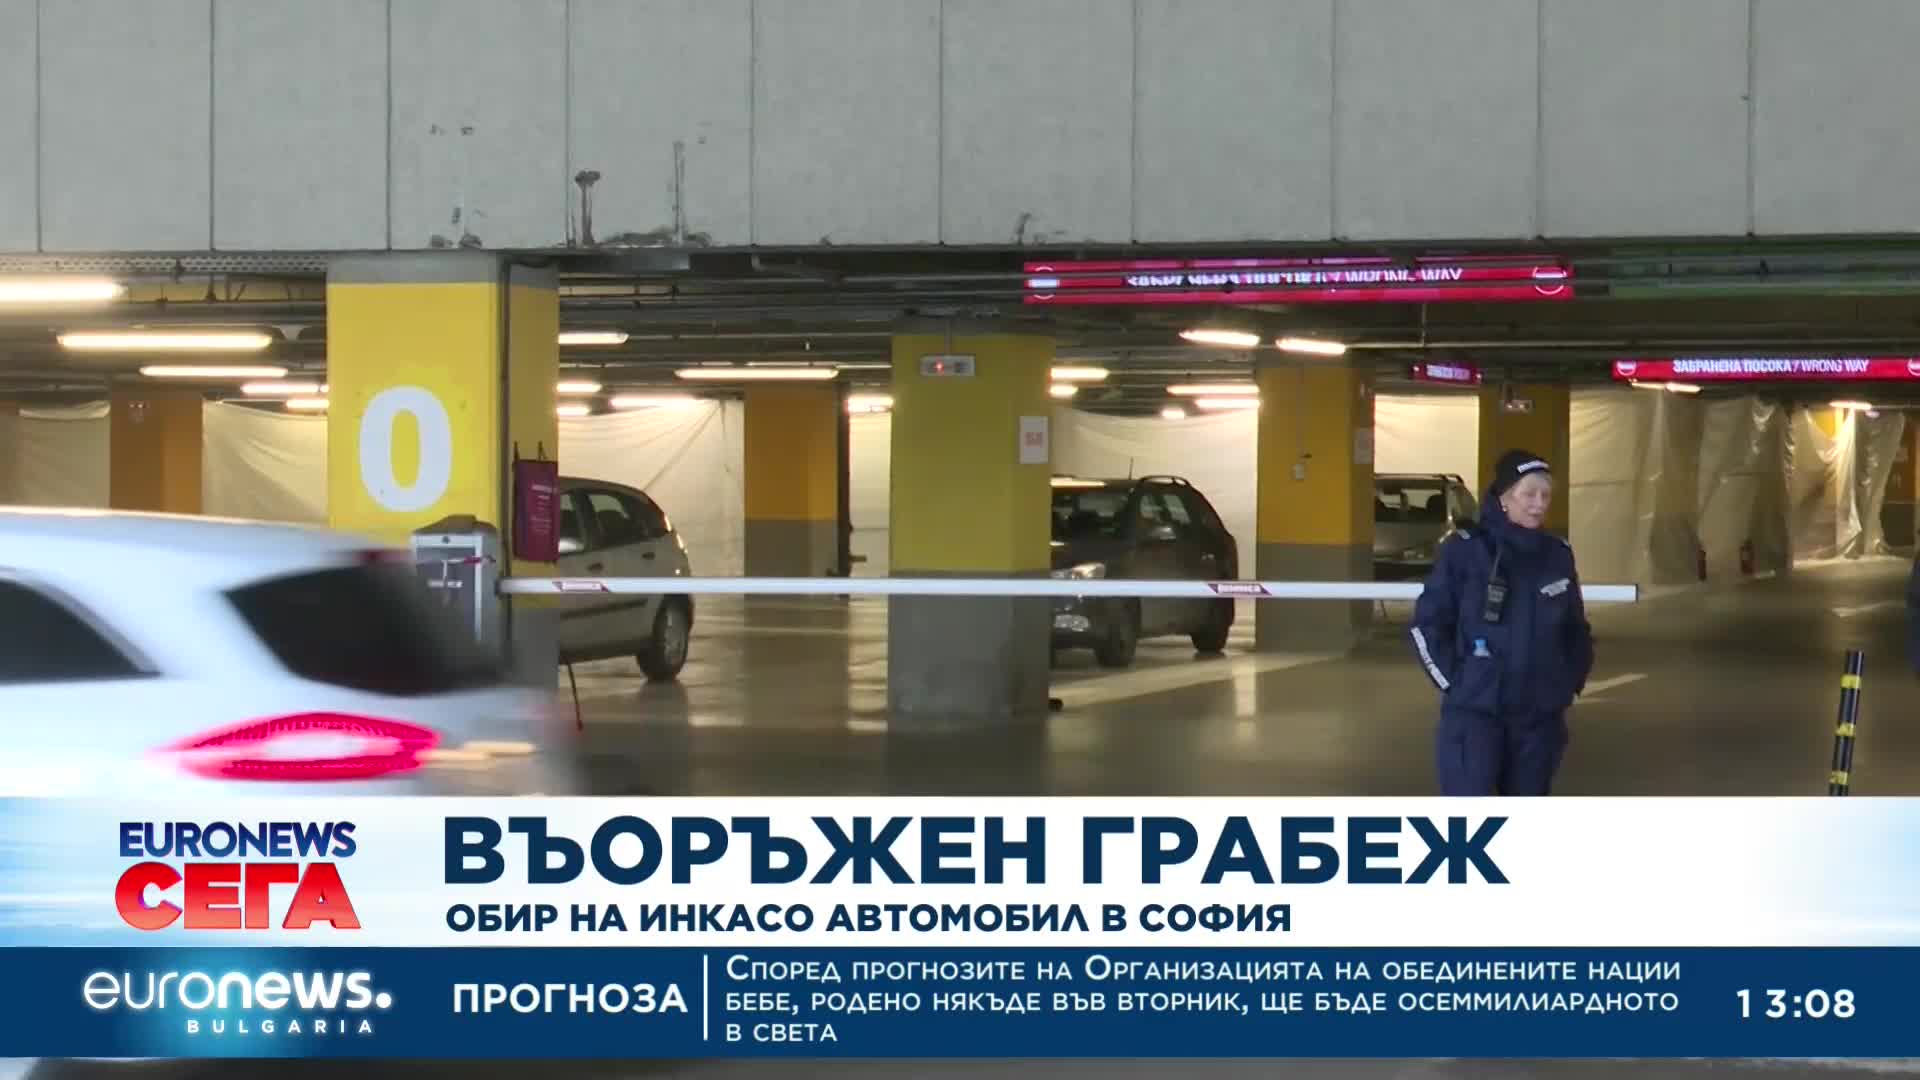 Въоръжен грабеж: Обир на инкасо автомобил в София